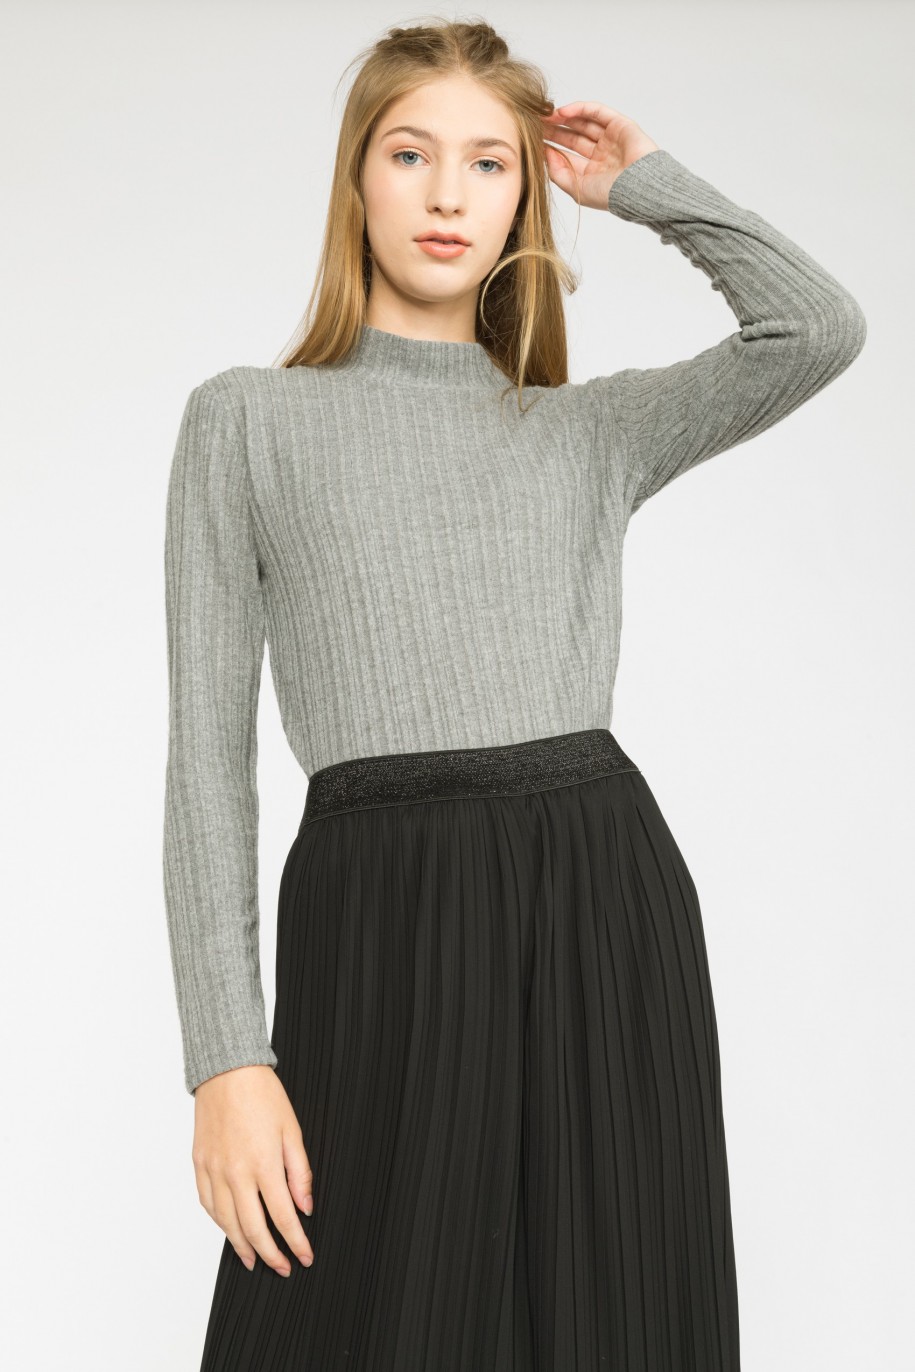 Szary sweter dla dziewczyny z długim rękawem i półgolfem - 31093